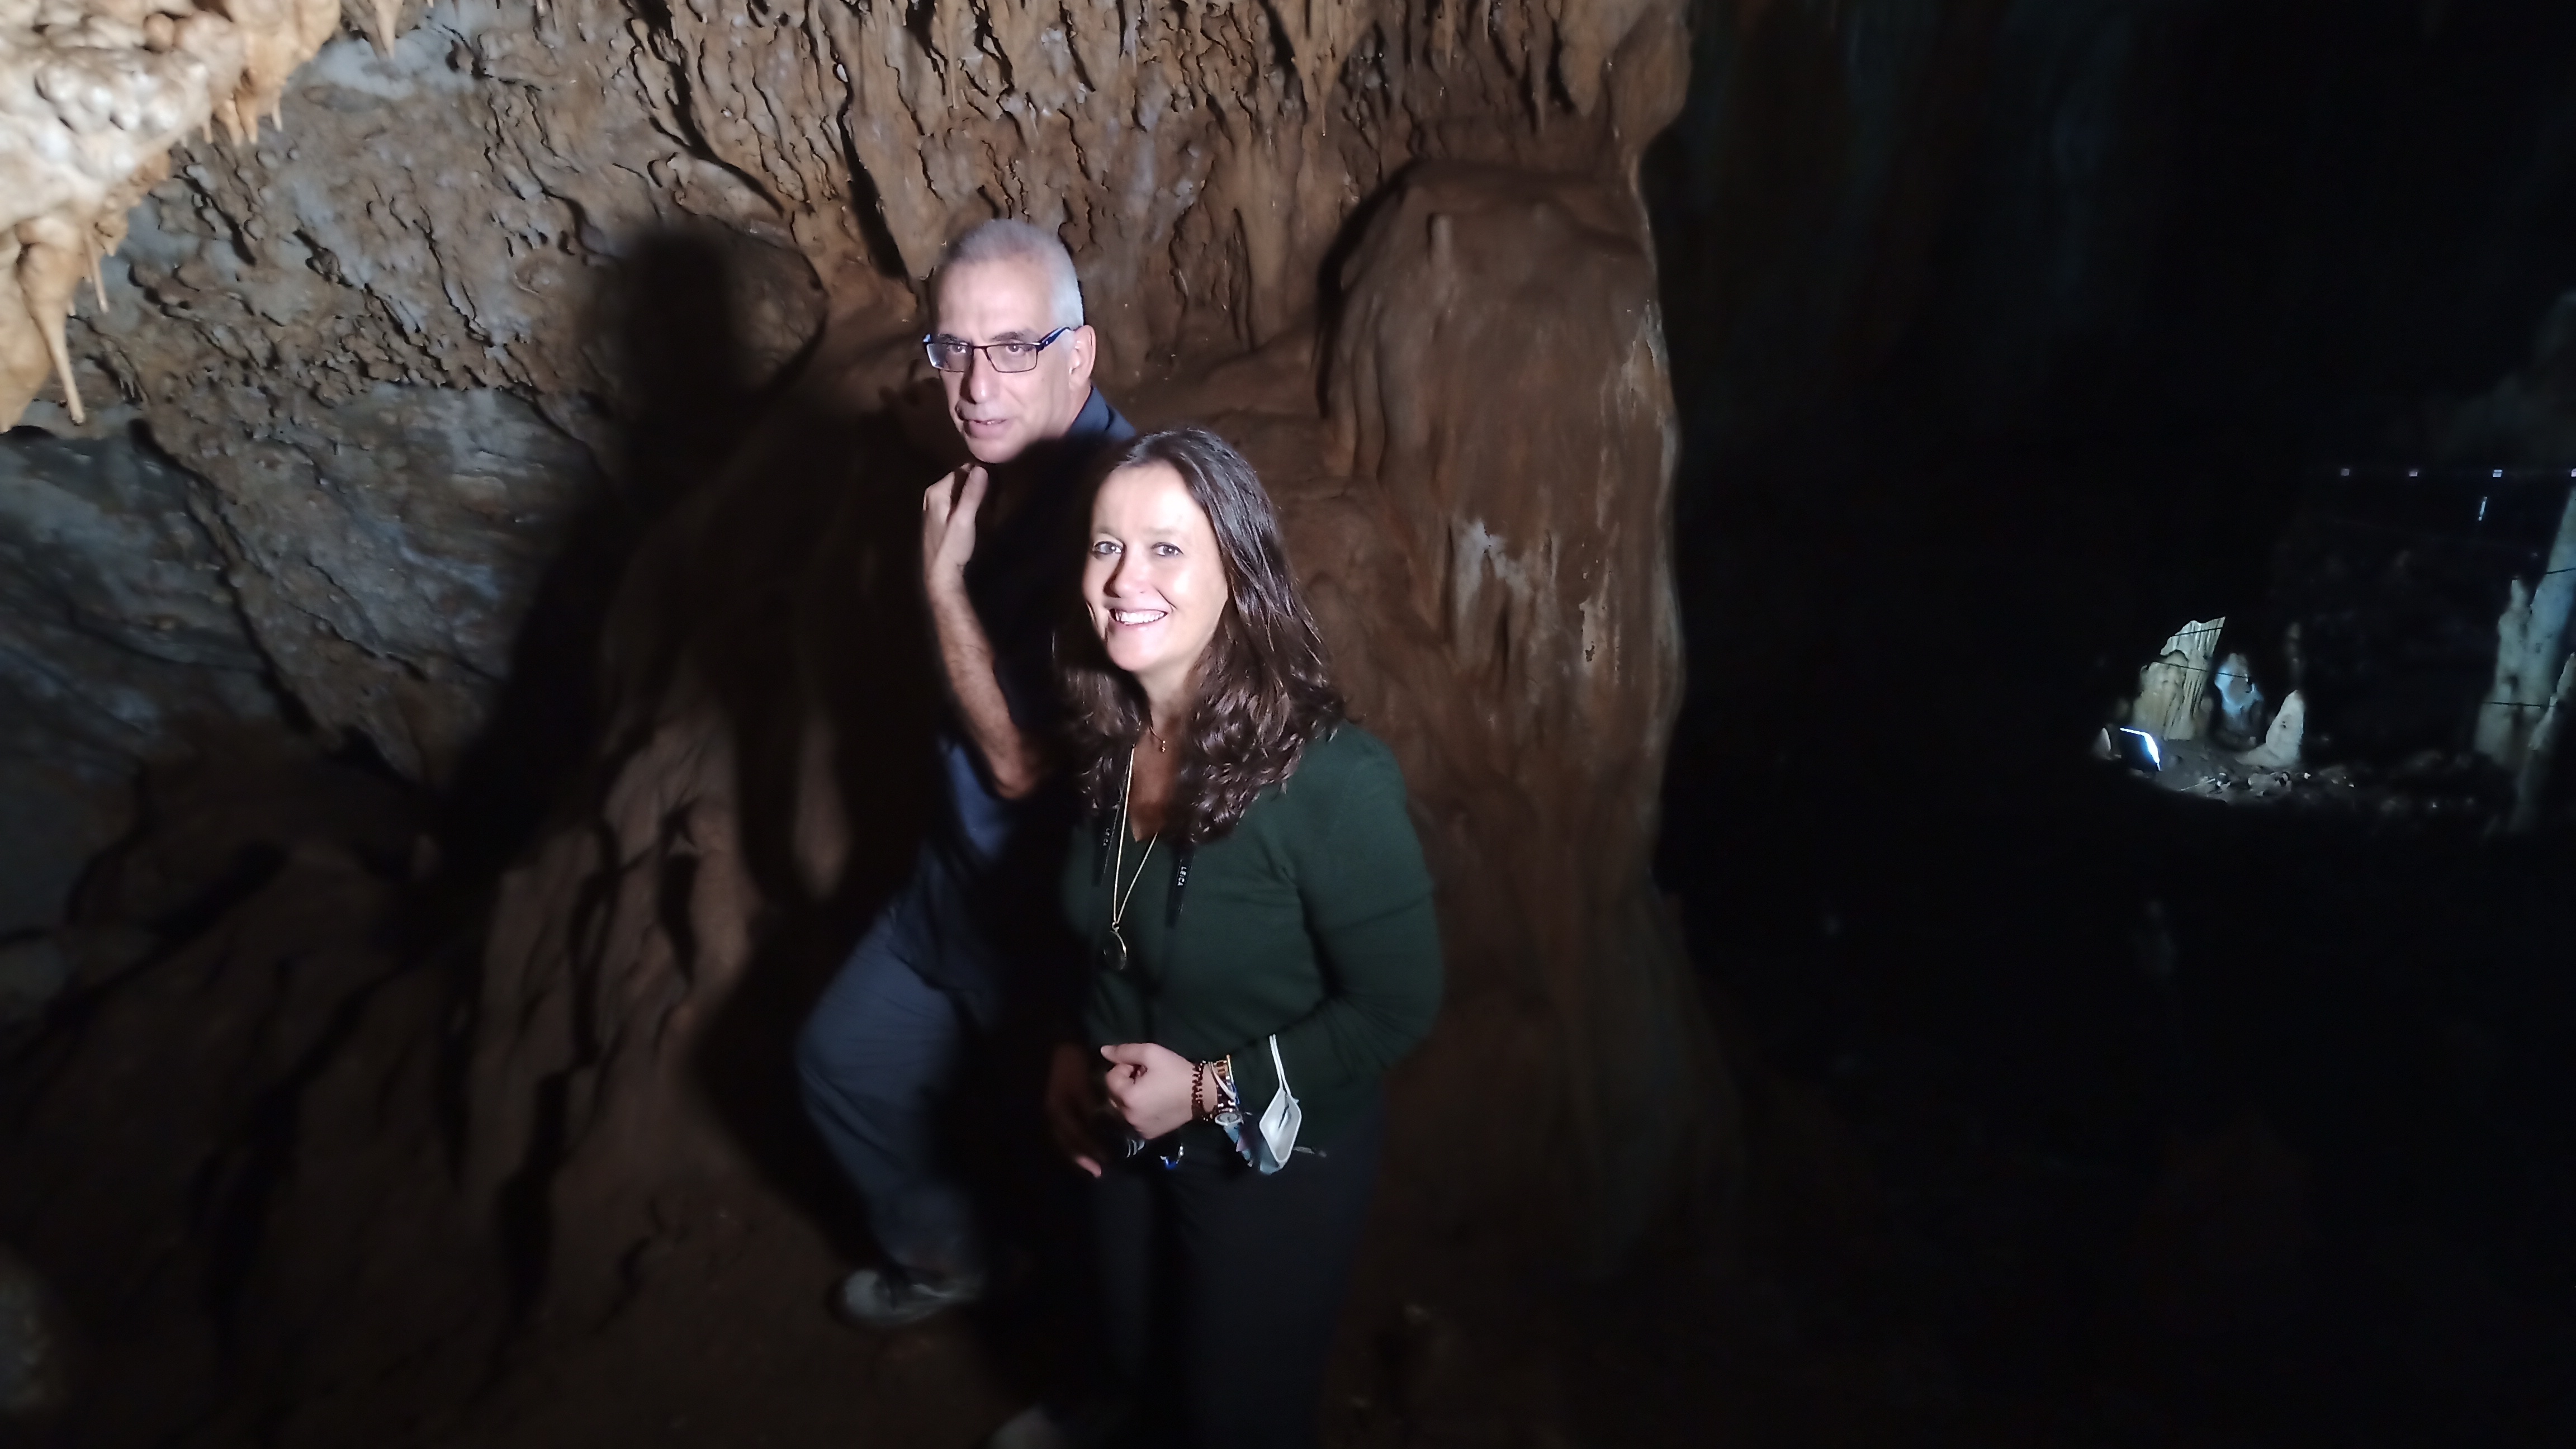 La doctora Martinón en Manot Cave junto a un colega israelí. Foto Navarro.